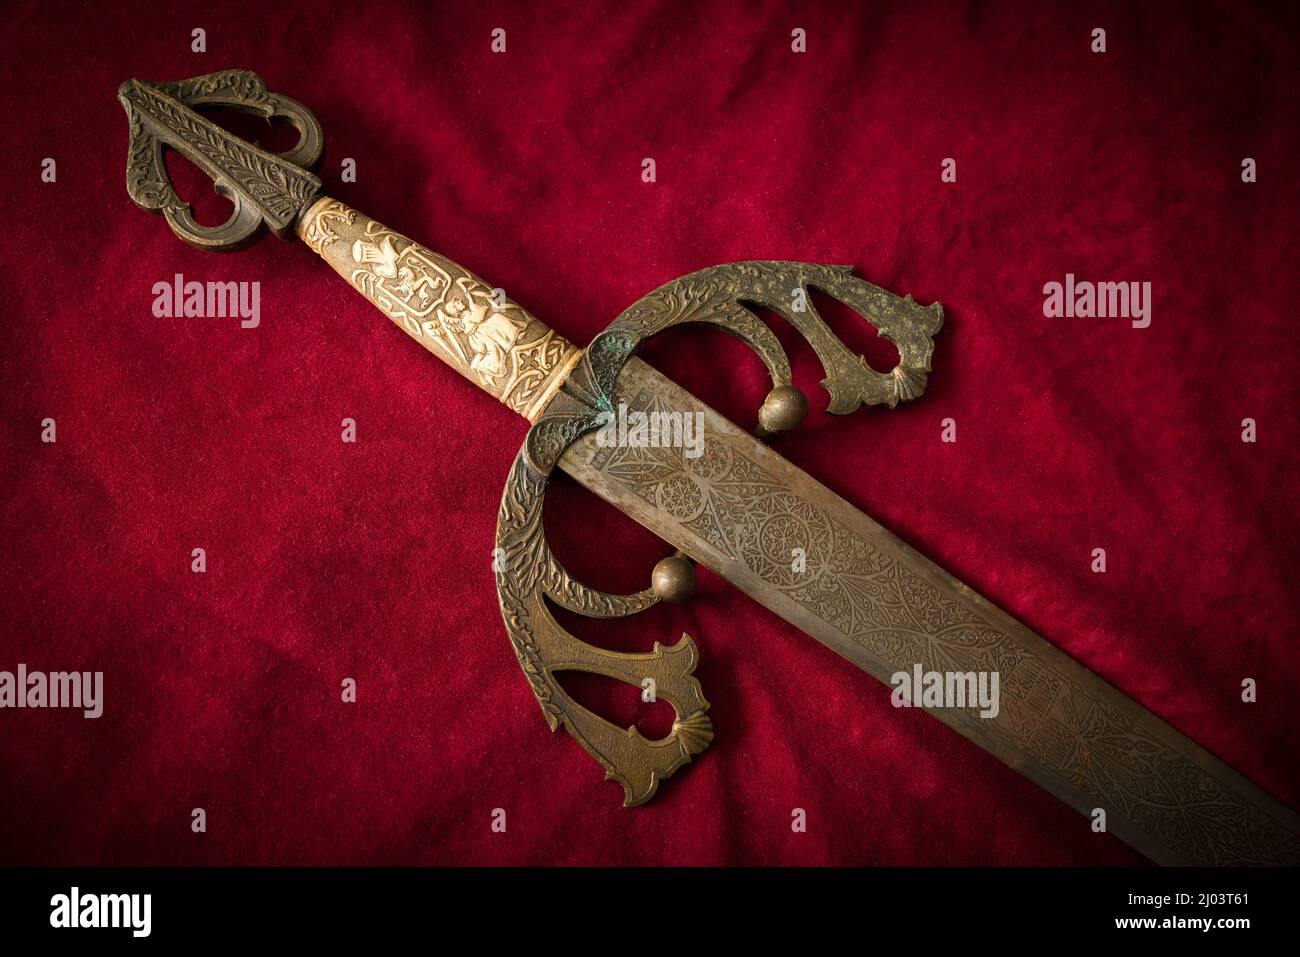 Épée de conquête en laiton. Il s'agit d'une épée espagnole de Tolède datant du 19th siècle, utilisée par les chevaliers médiévaux. Banque D'Images